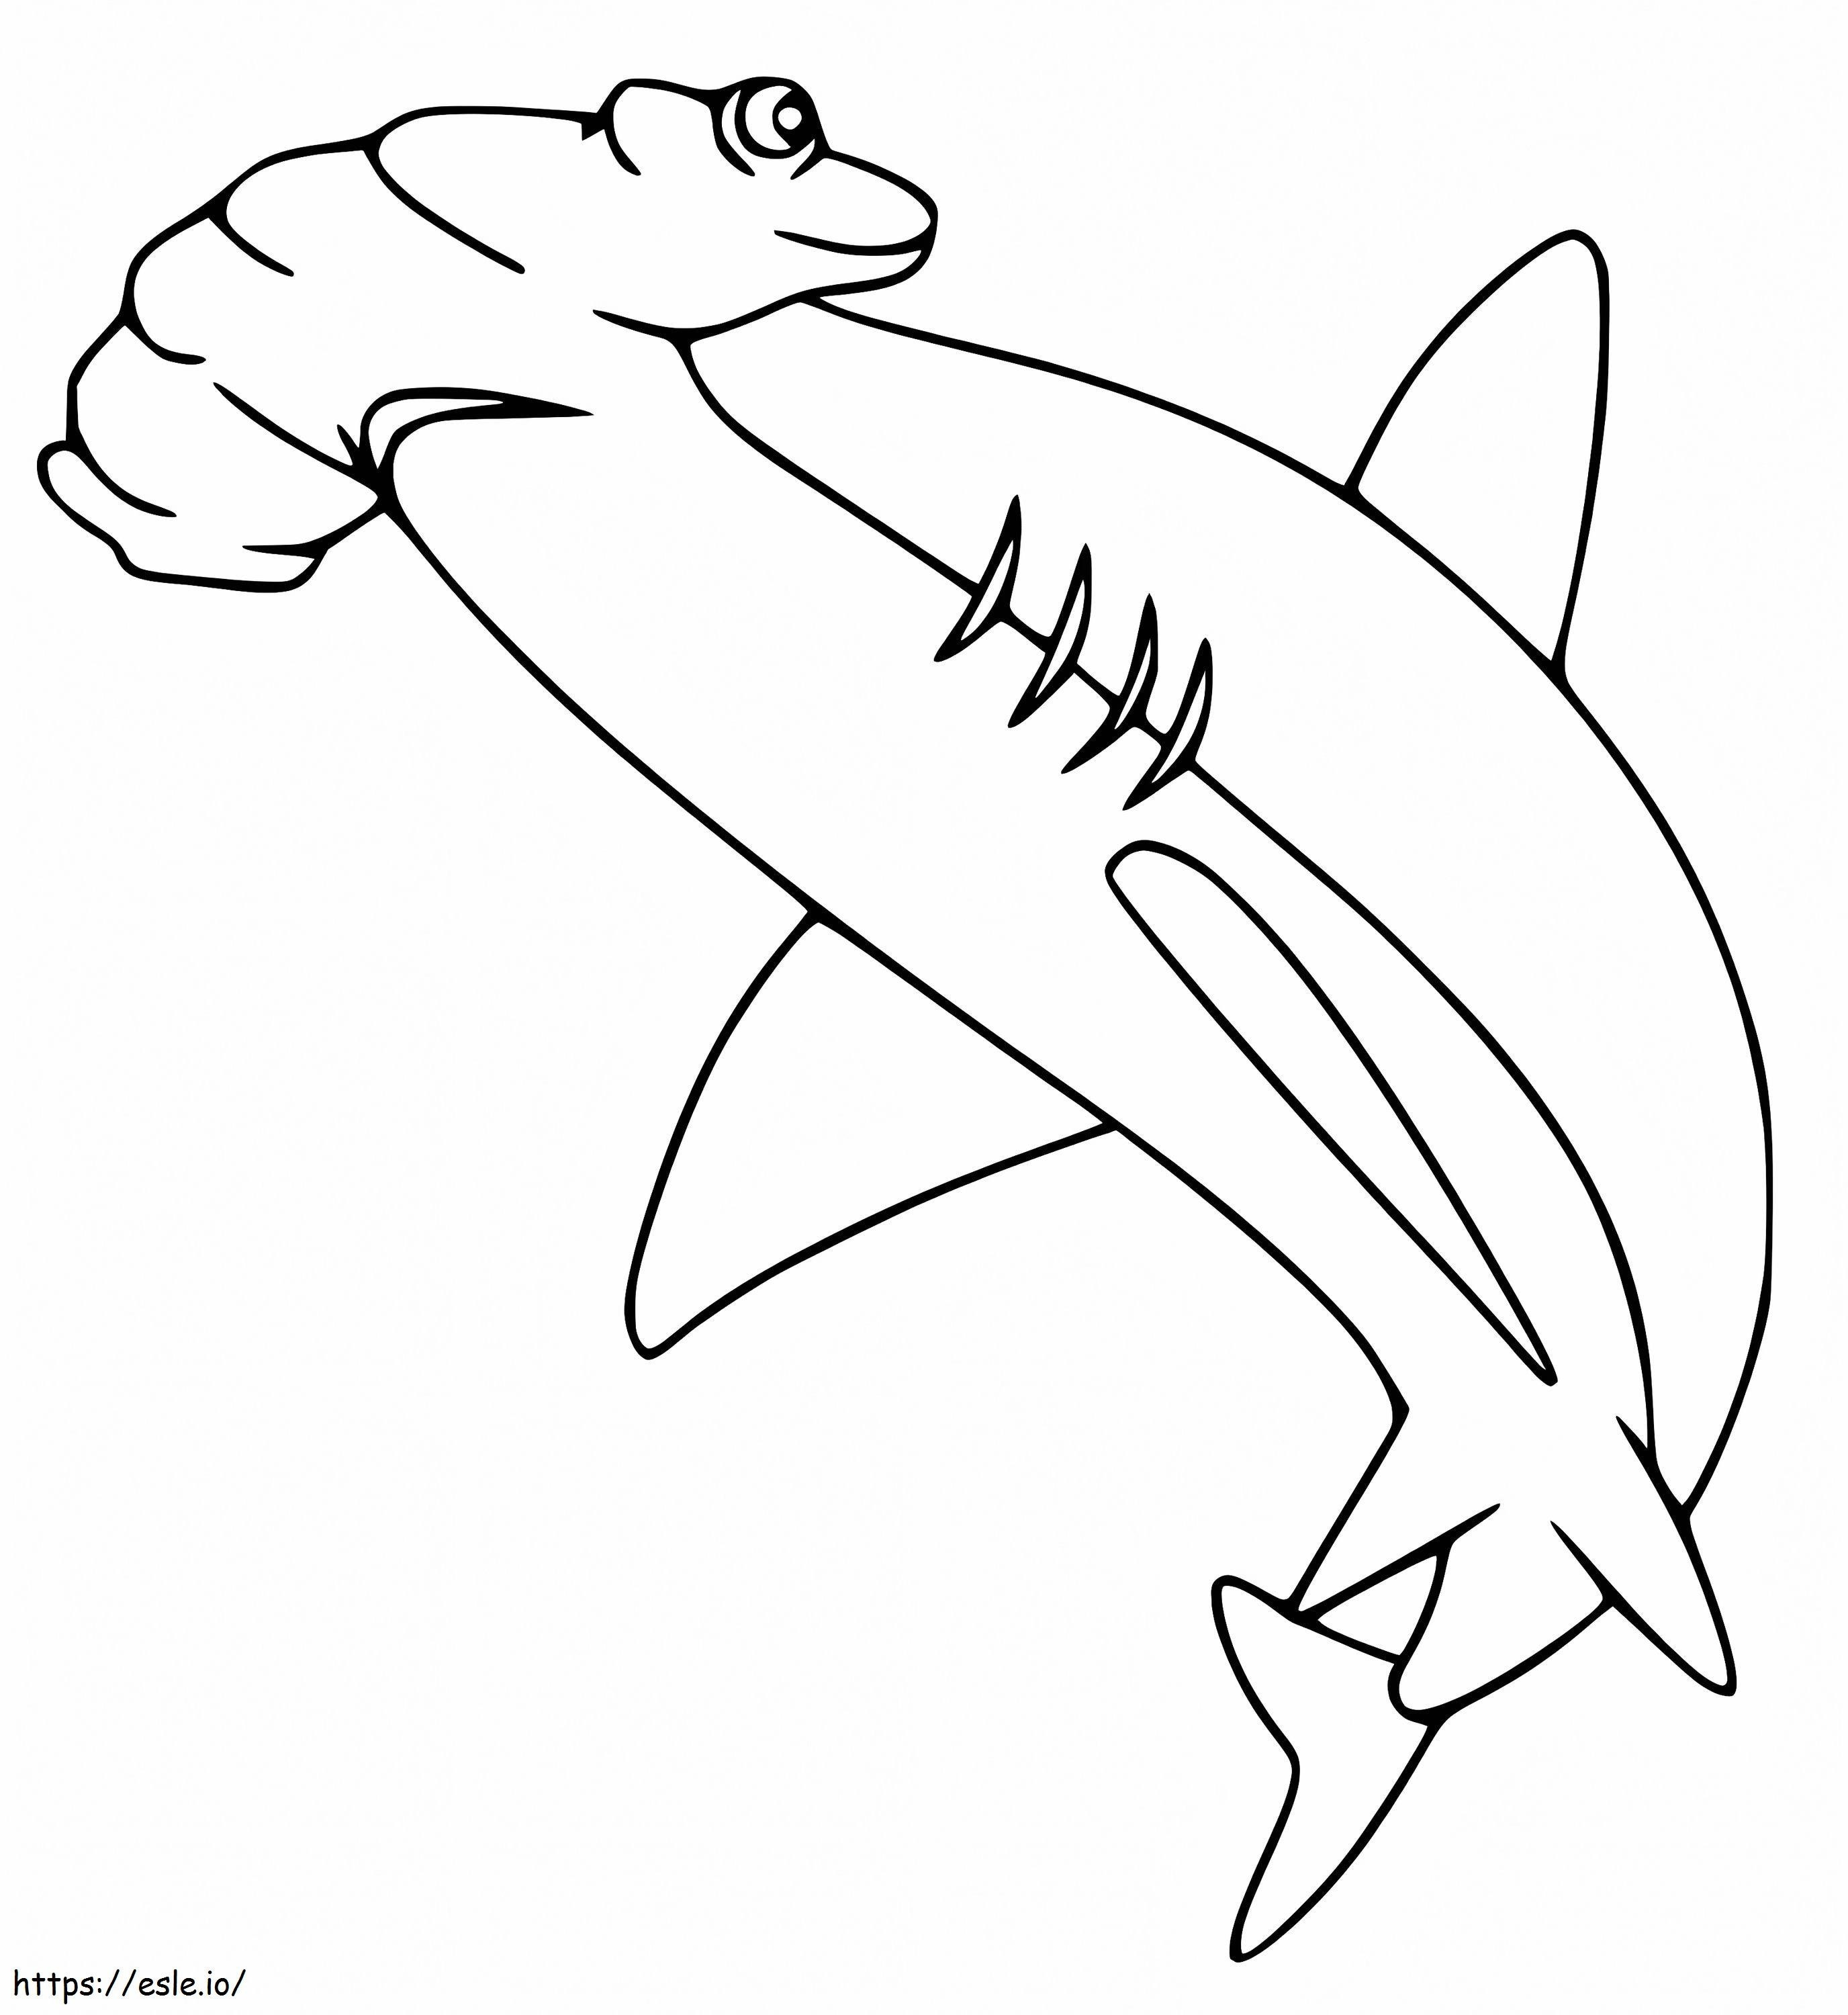 Çekiçbaş Köpekbalığı 5 boyama